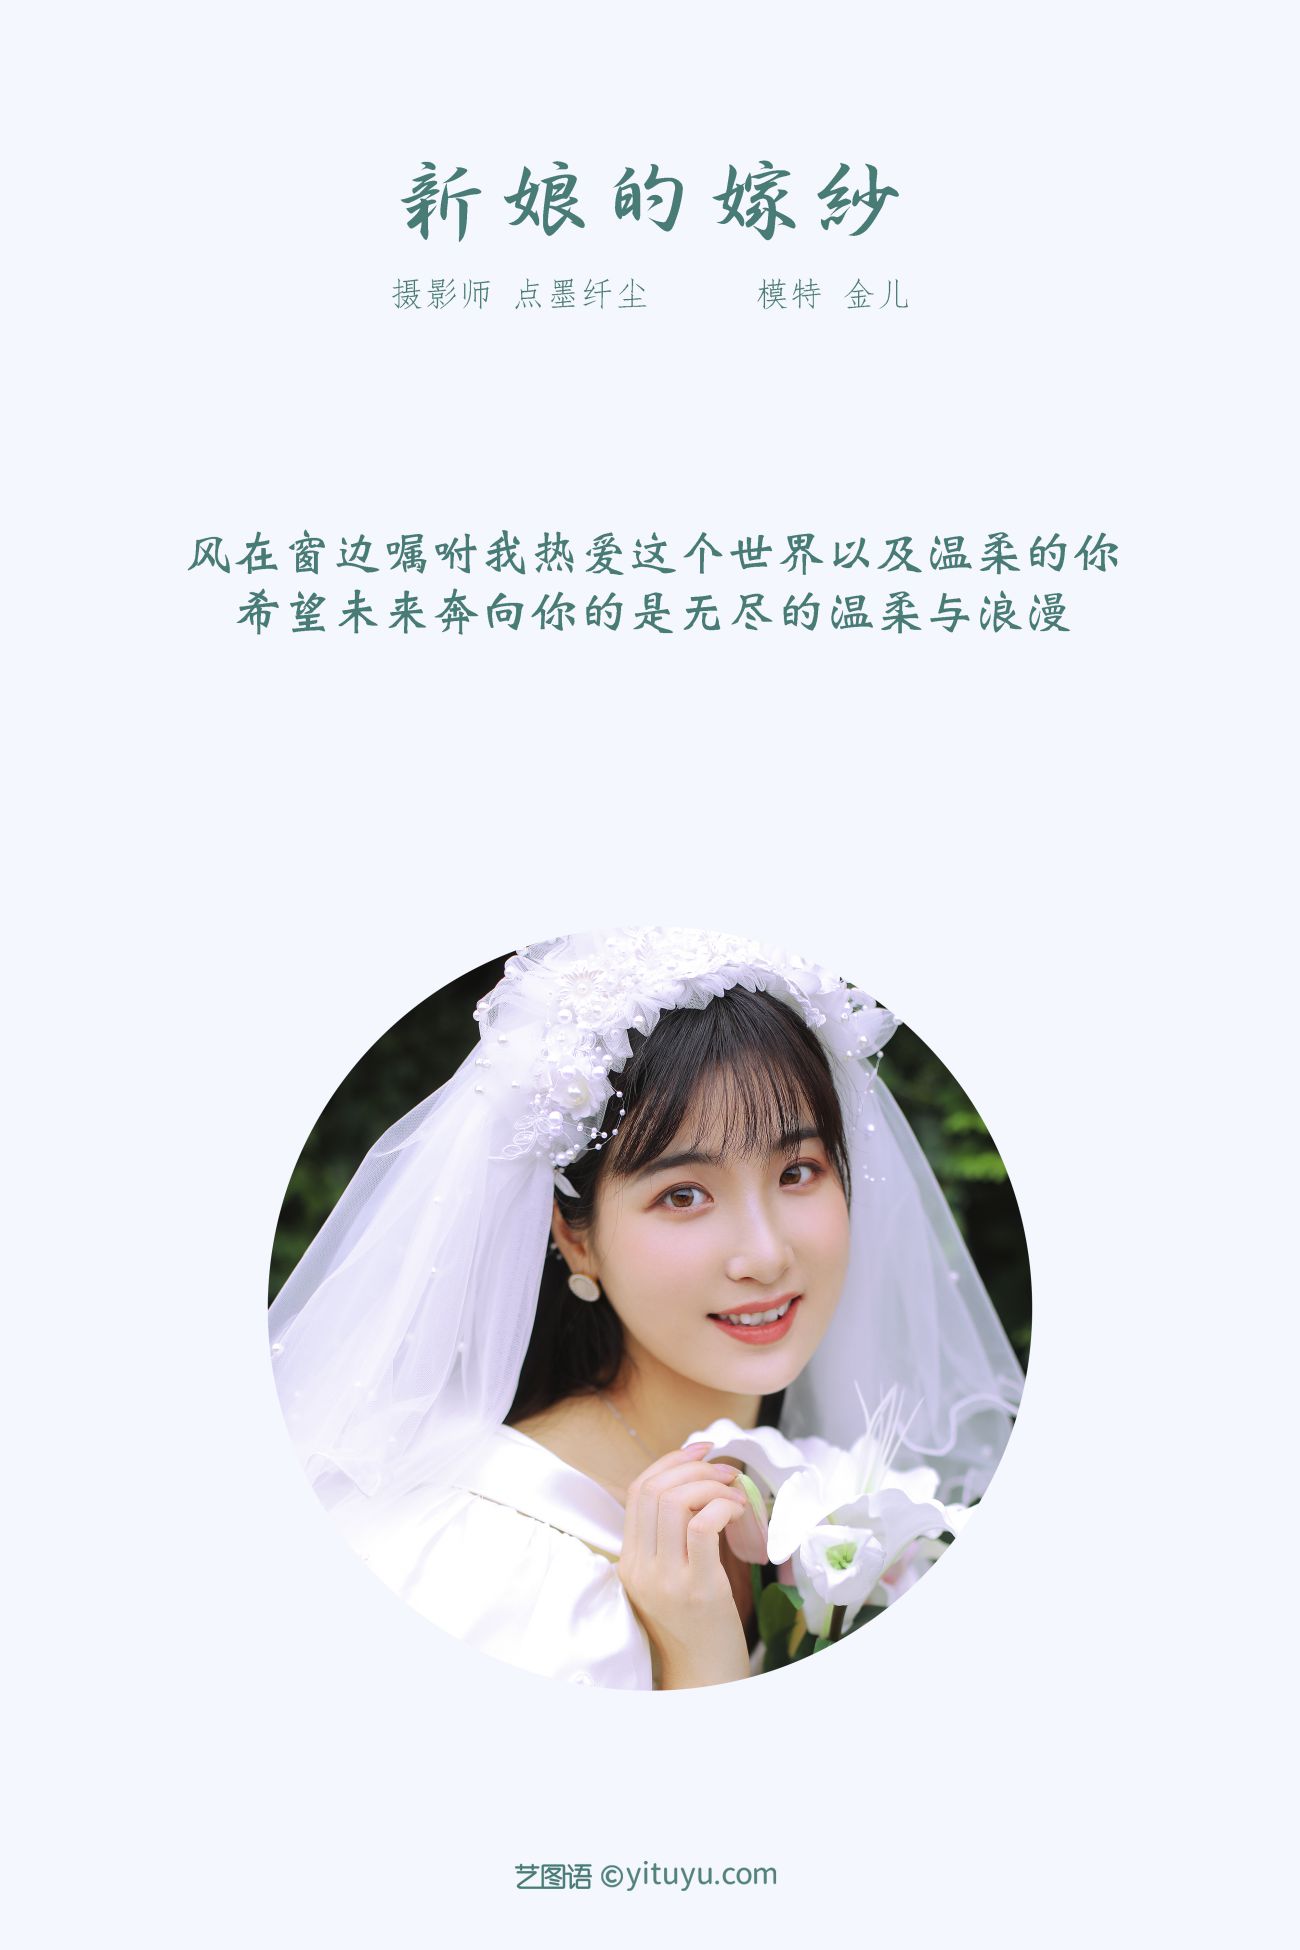 YITUYU艺图语模特唯美写真2021.11.08期新娘的嫁纱我是金儿呀 (2)